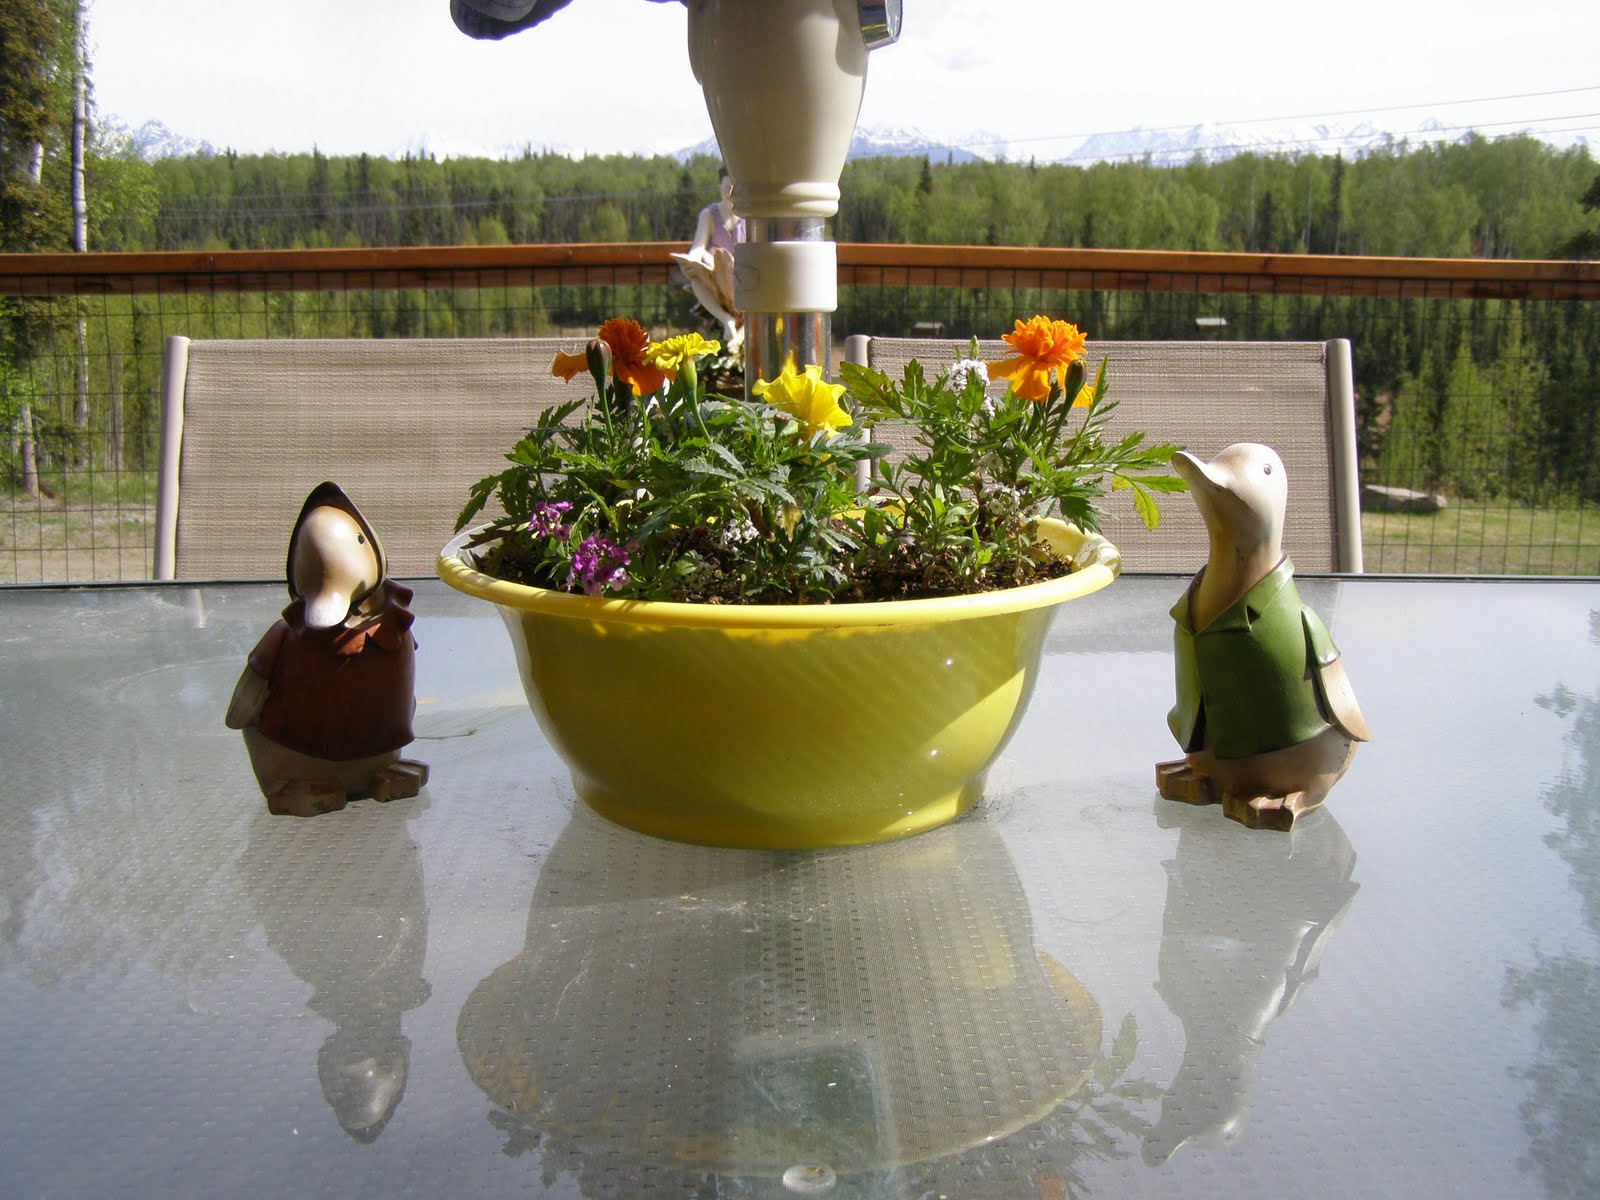 Silveraurora Shetland Sheep: Patio table umbrella planter for flowers